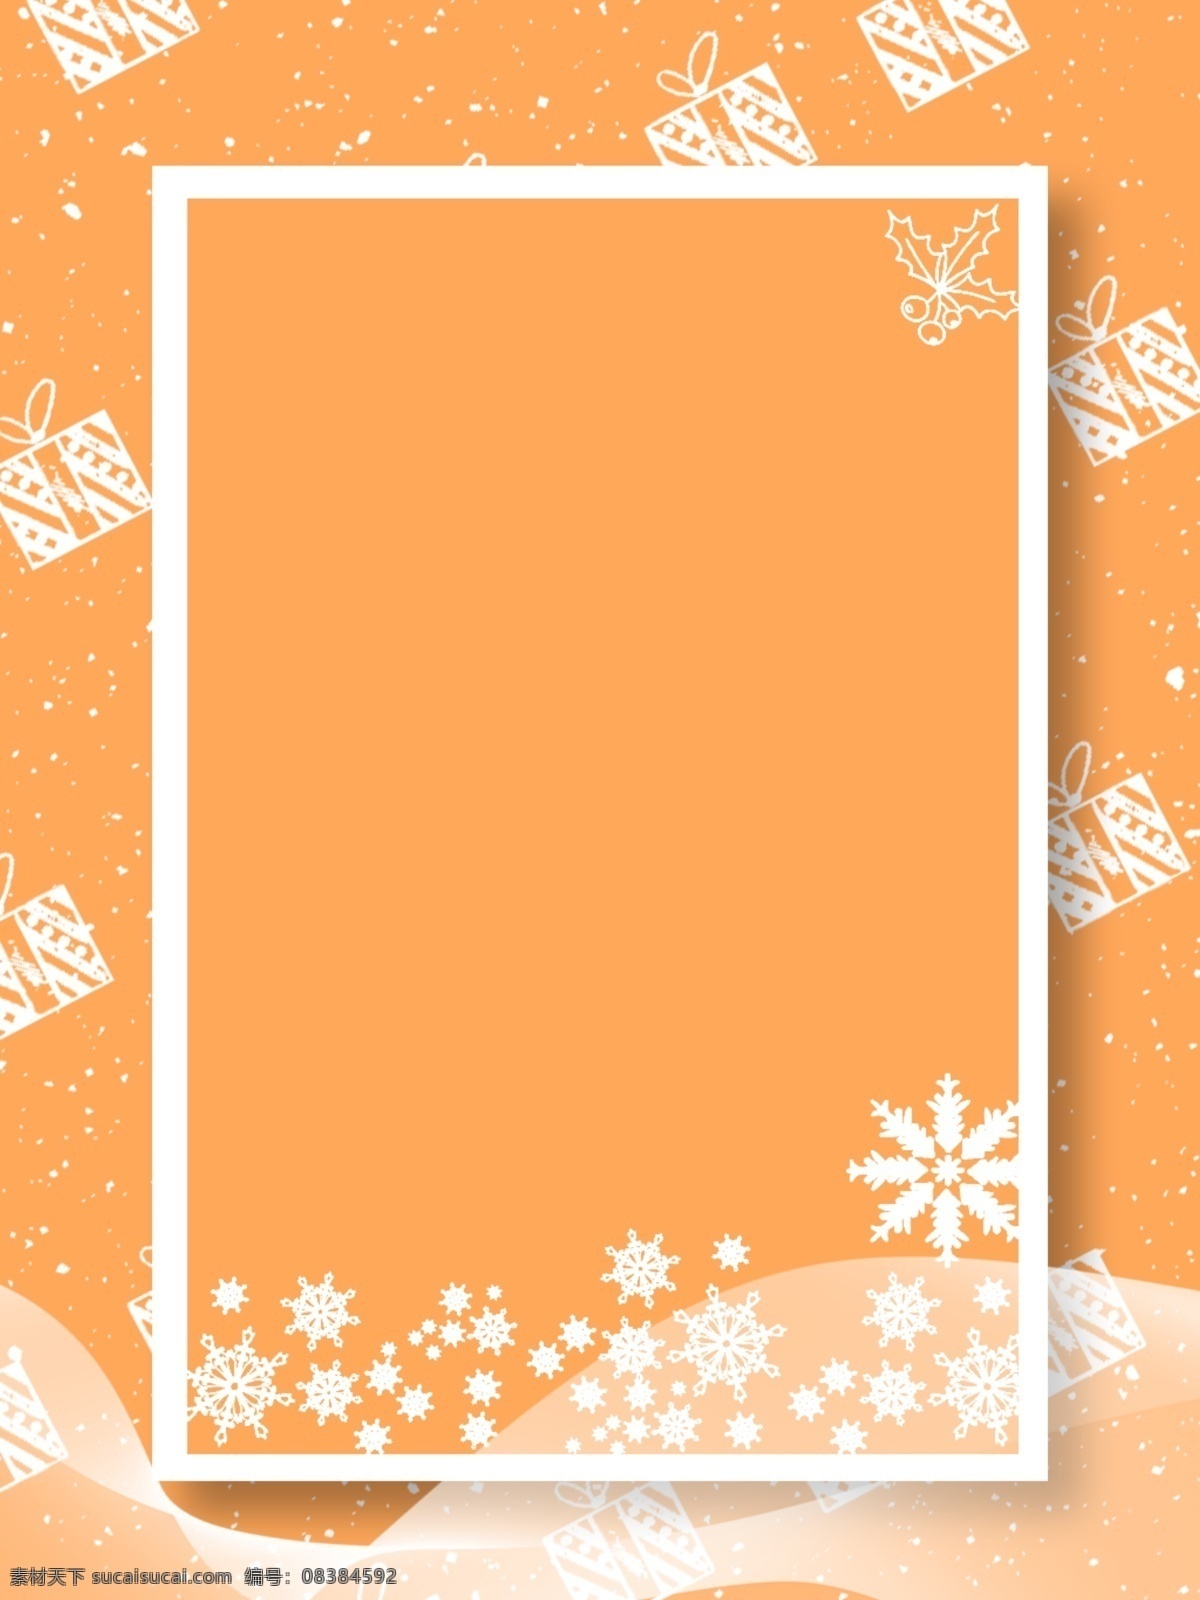 原创 圣诞 礼物 广告 背景 时尚 创意 边框 橙色 广告背景 圣诞礼物 淡雅